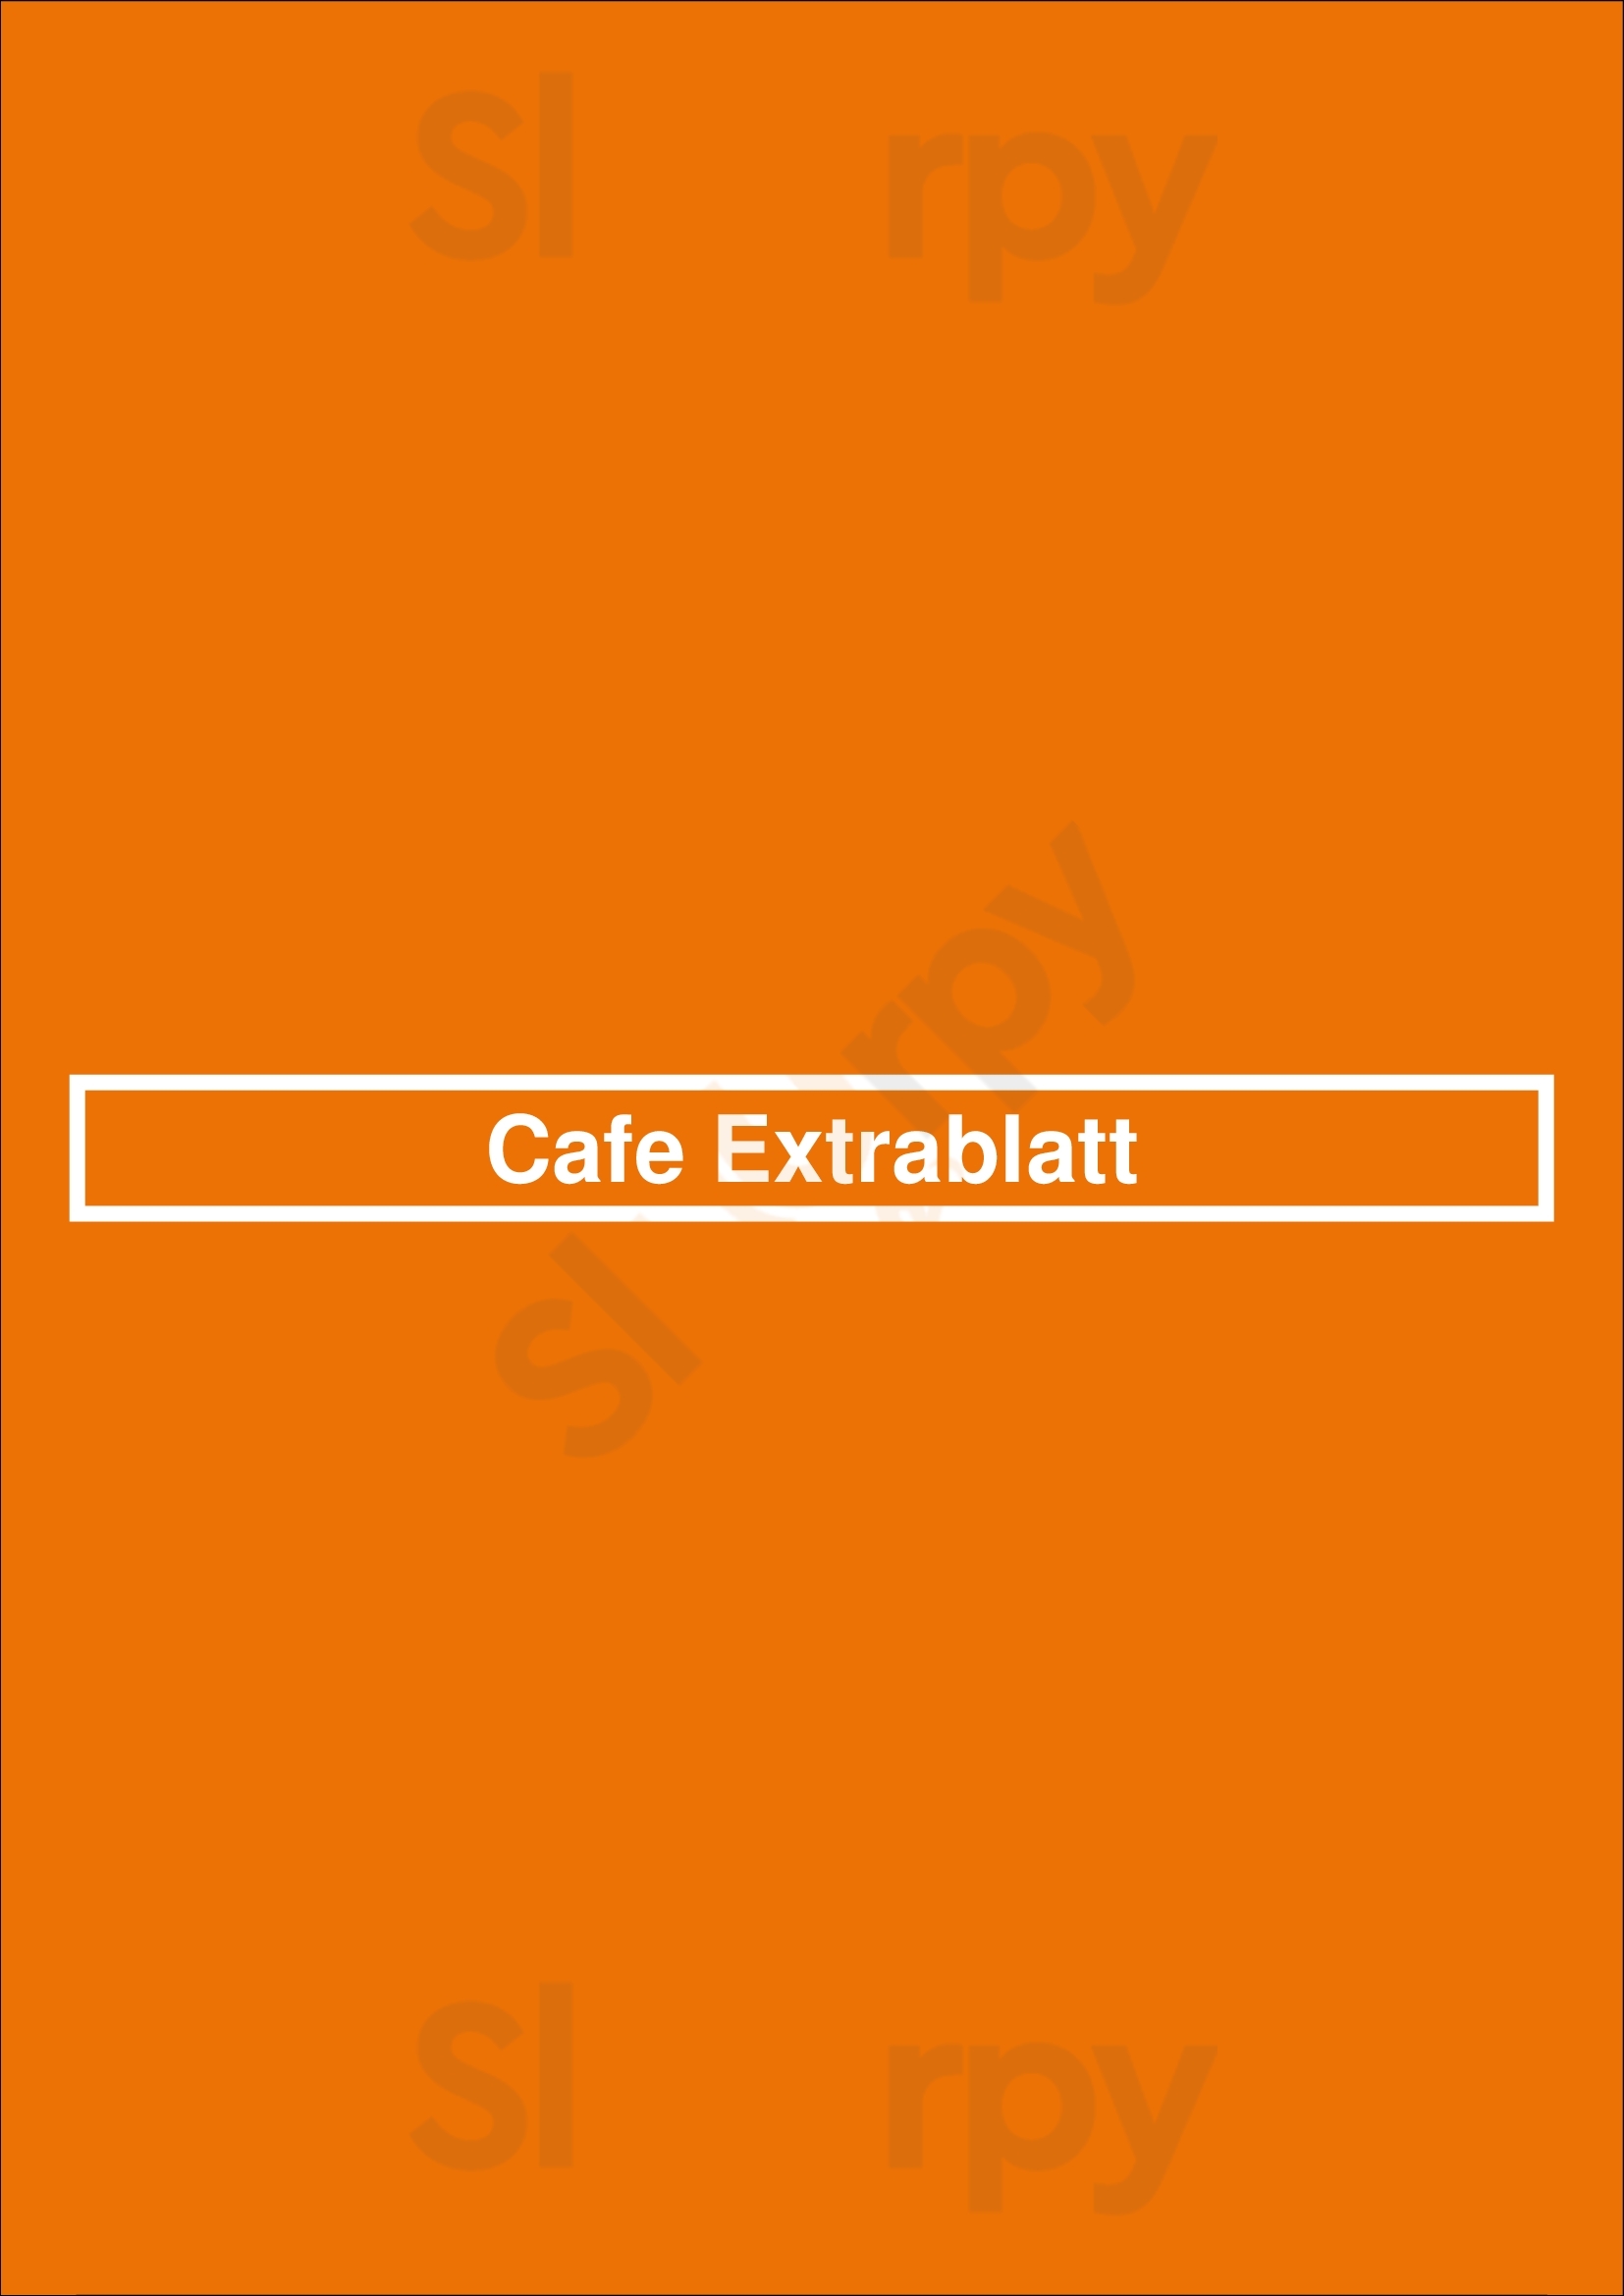 Cafe Extrablatt Darmstadt Menu - 1